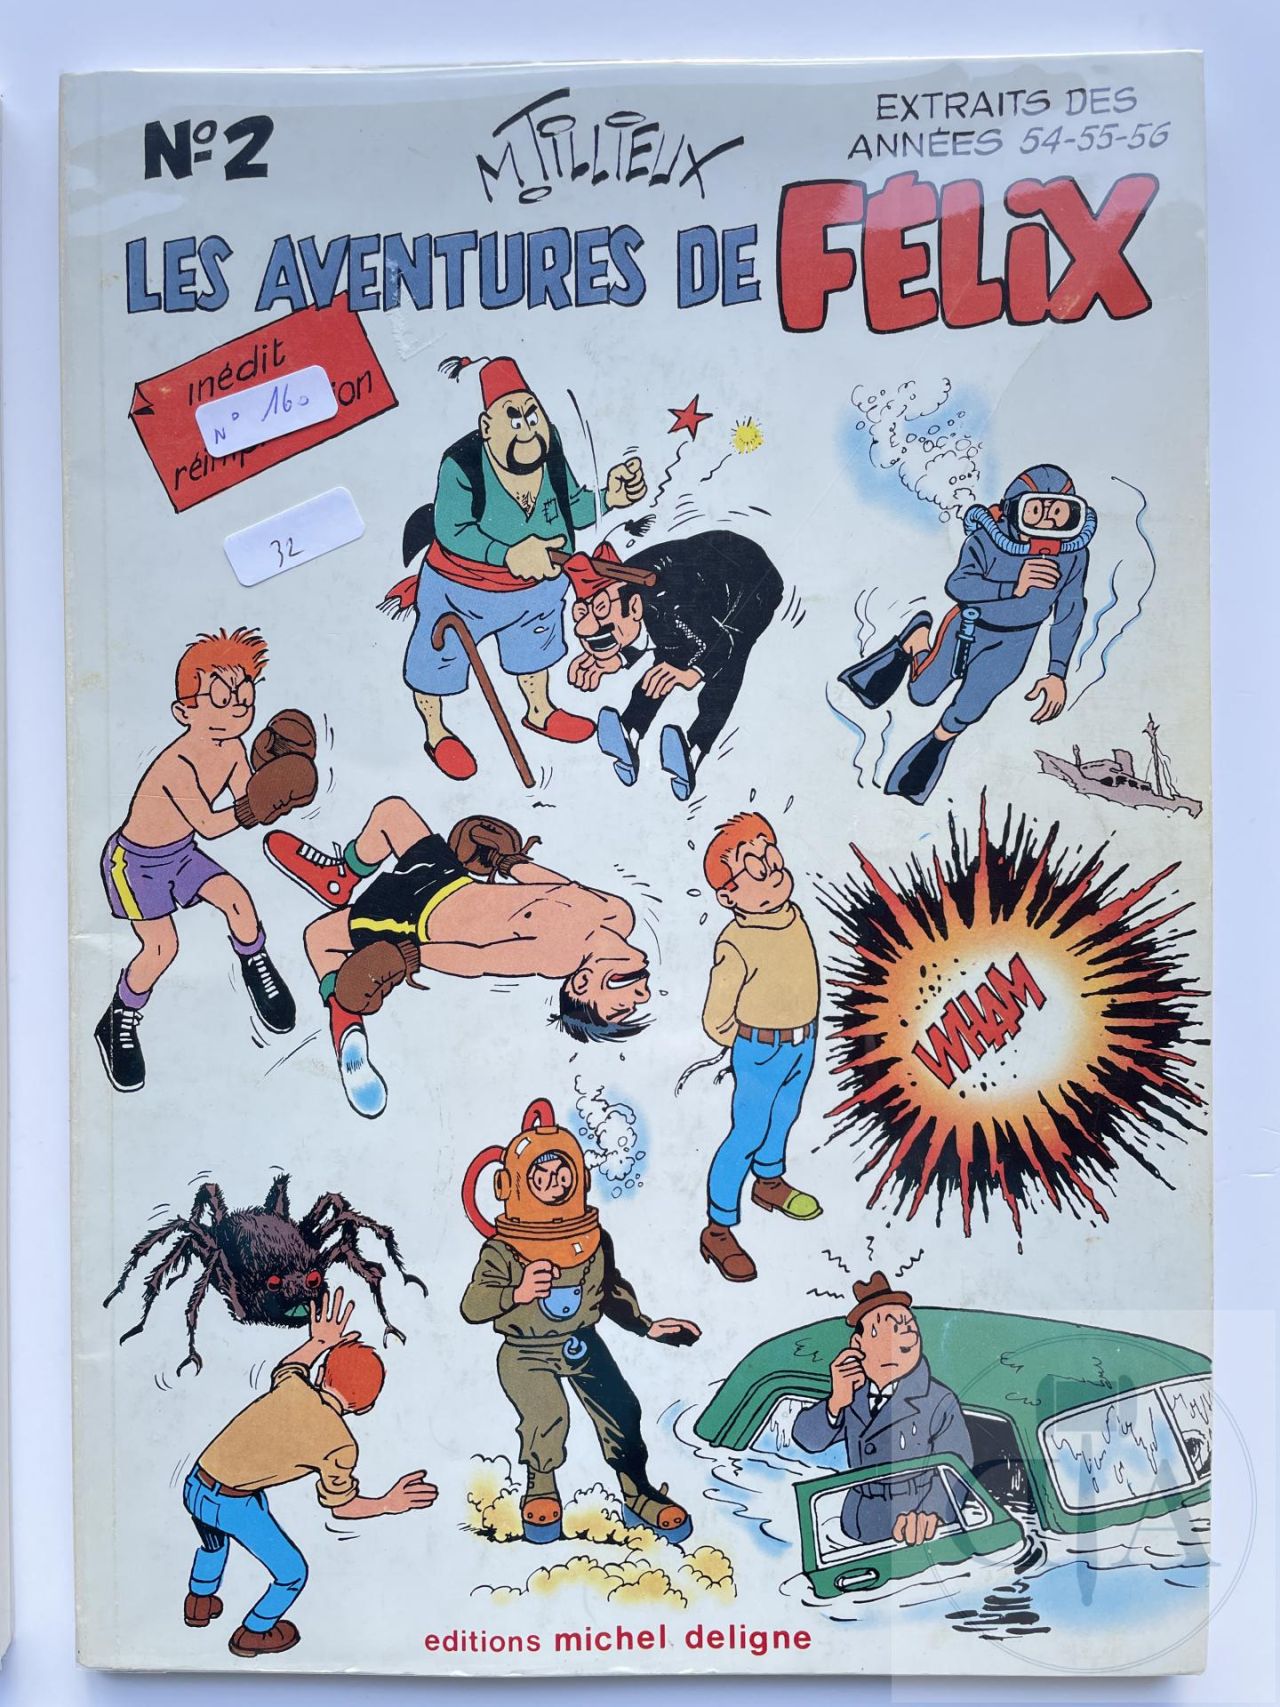 Hergé - Puzzle Tintin La porte de la fusée avec poster - ie BD  Librairie BD à Paris